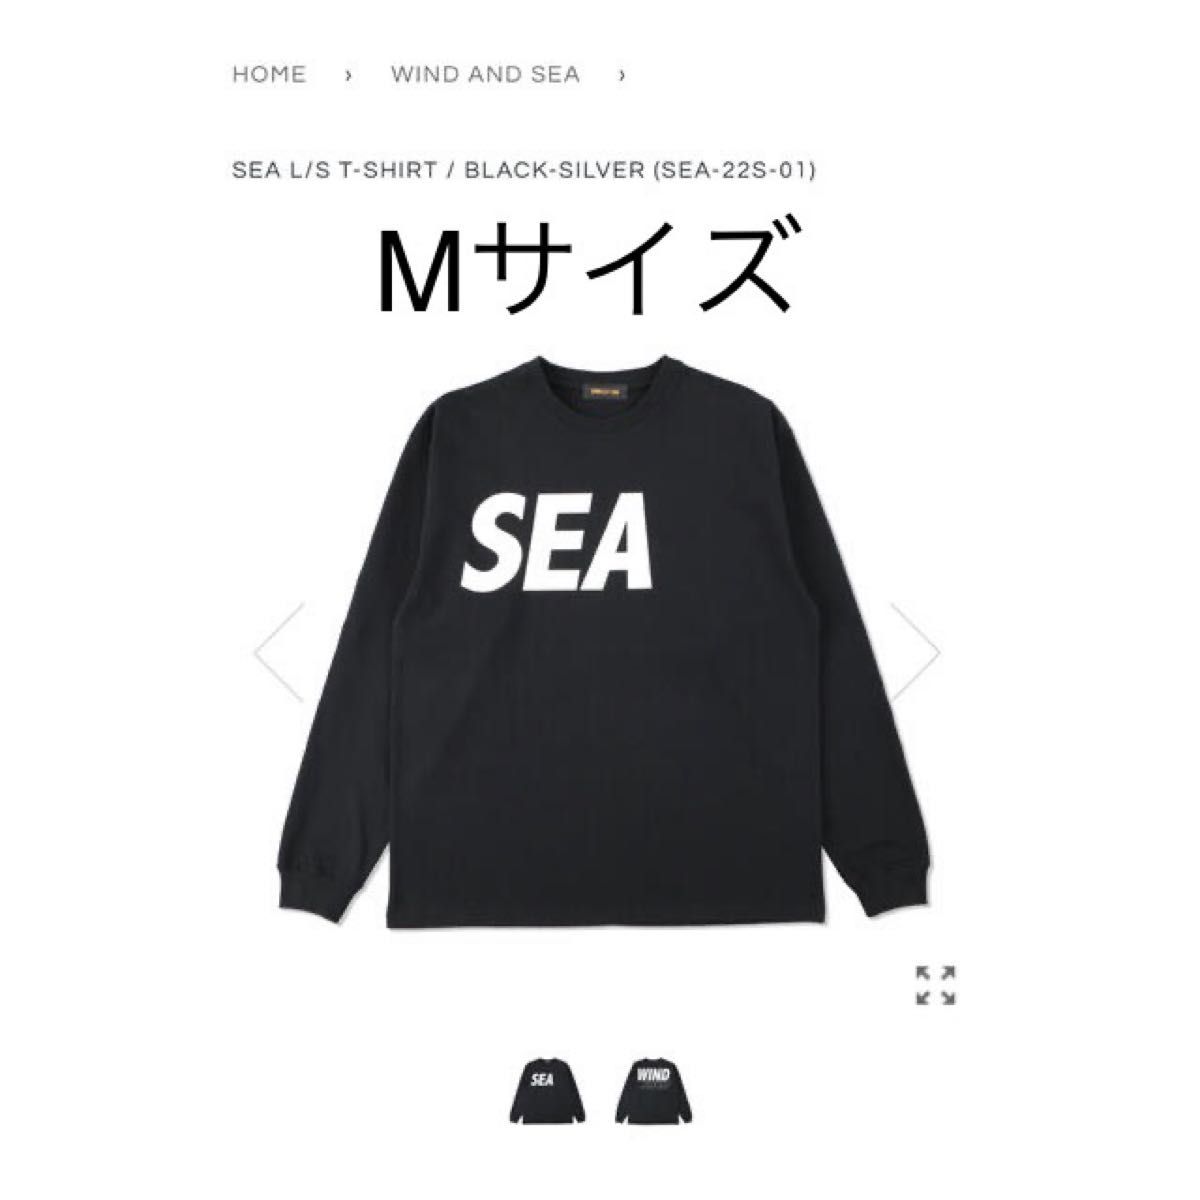 価値 Lサイズ WIND AND SEA S/S T-SHIRT グレー | artfive.co.jp